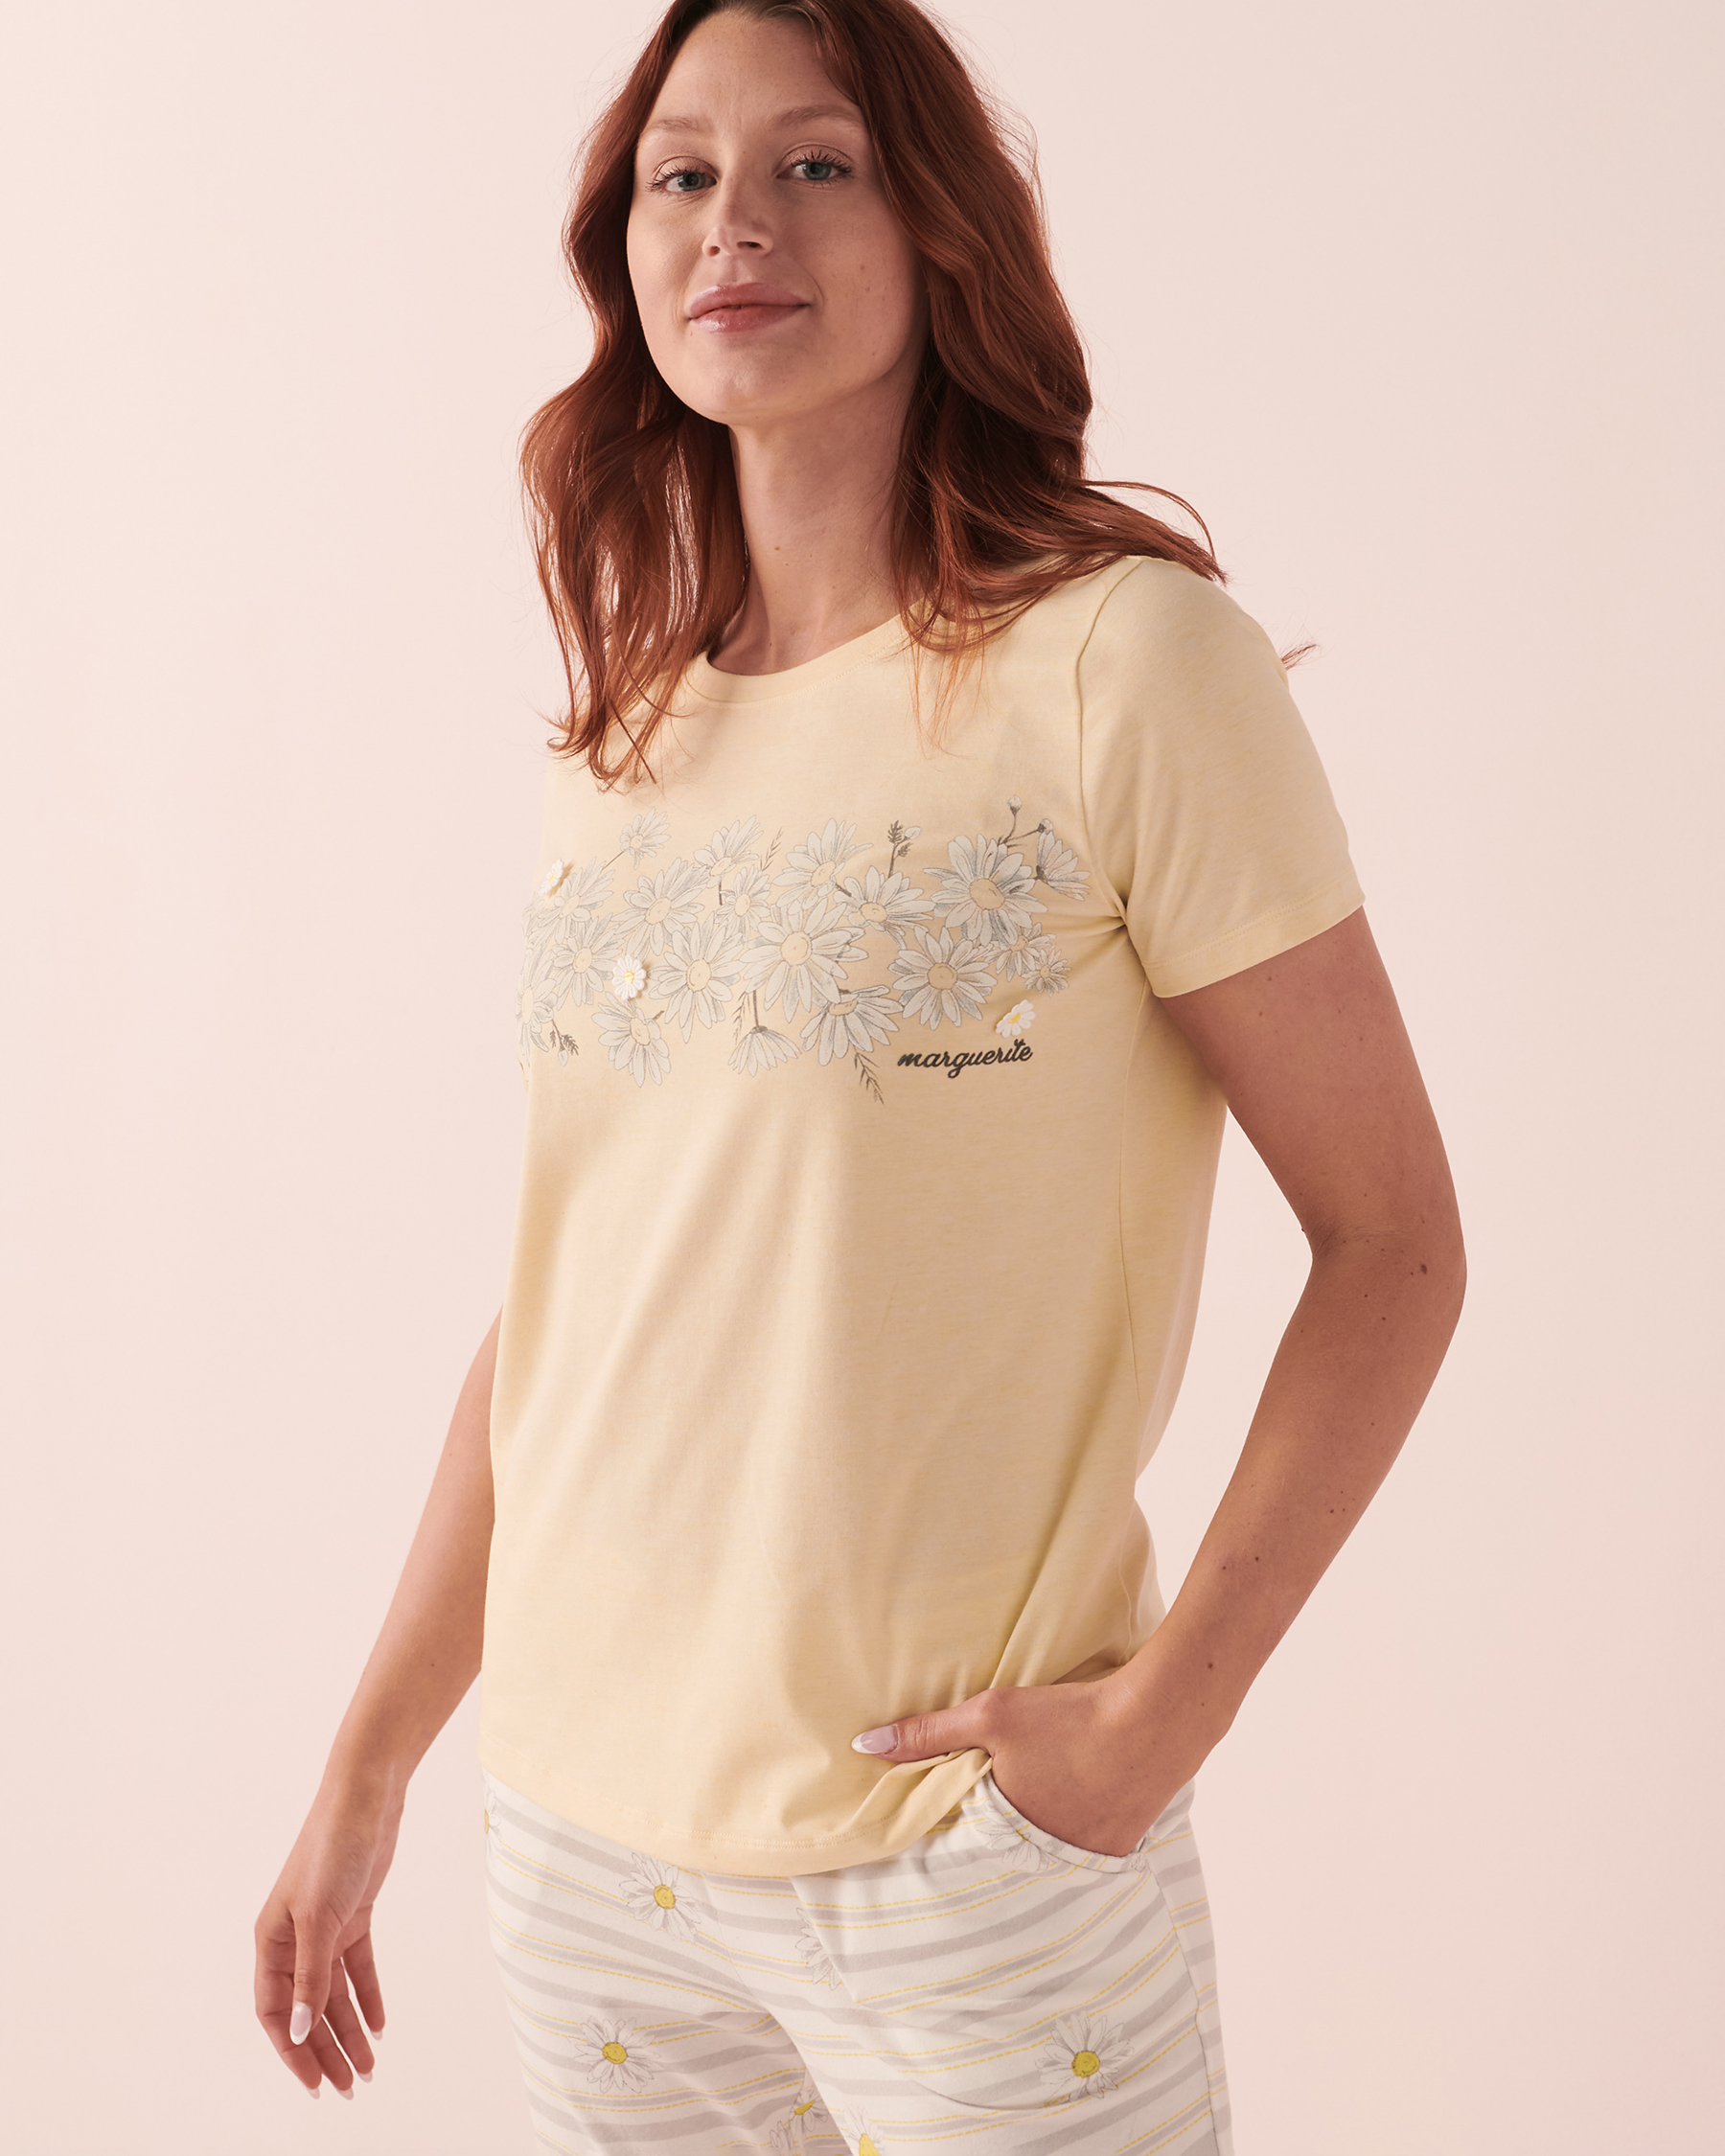 La Vie en Rose Cotton Scoop Neck T-shirt. 1